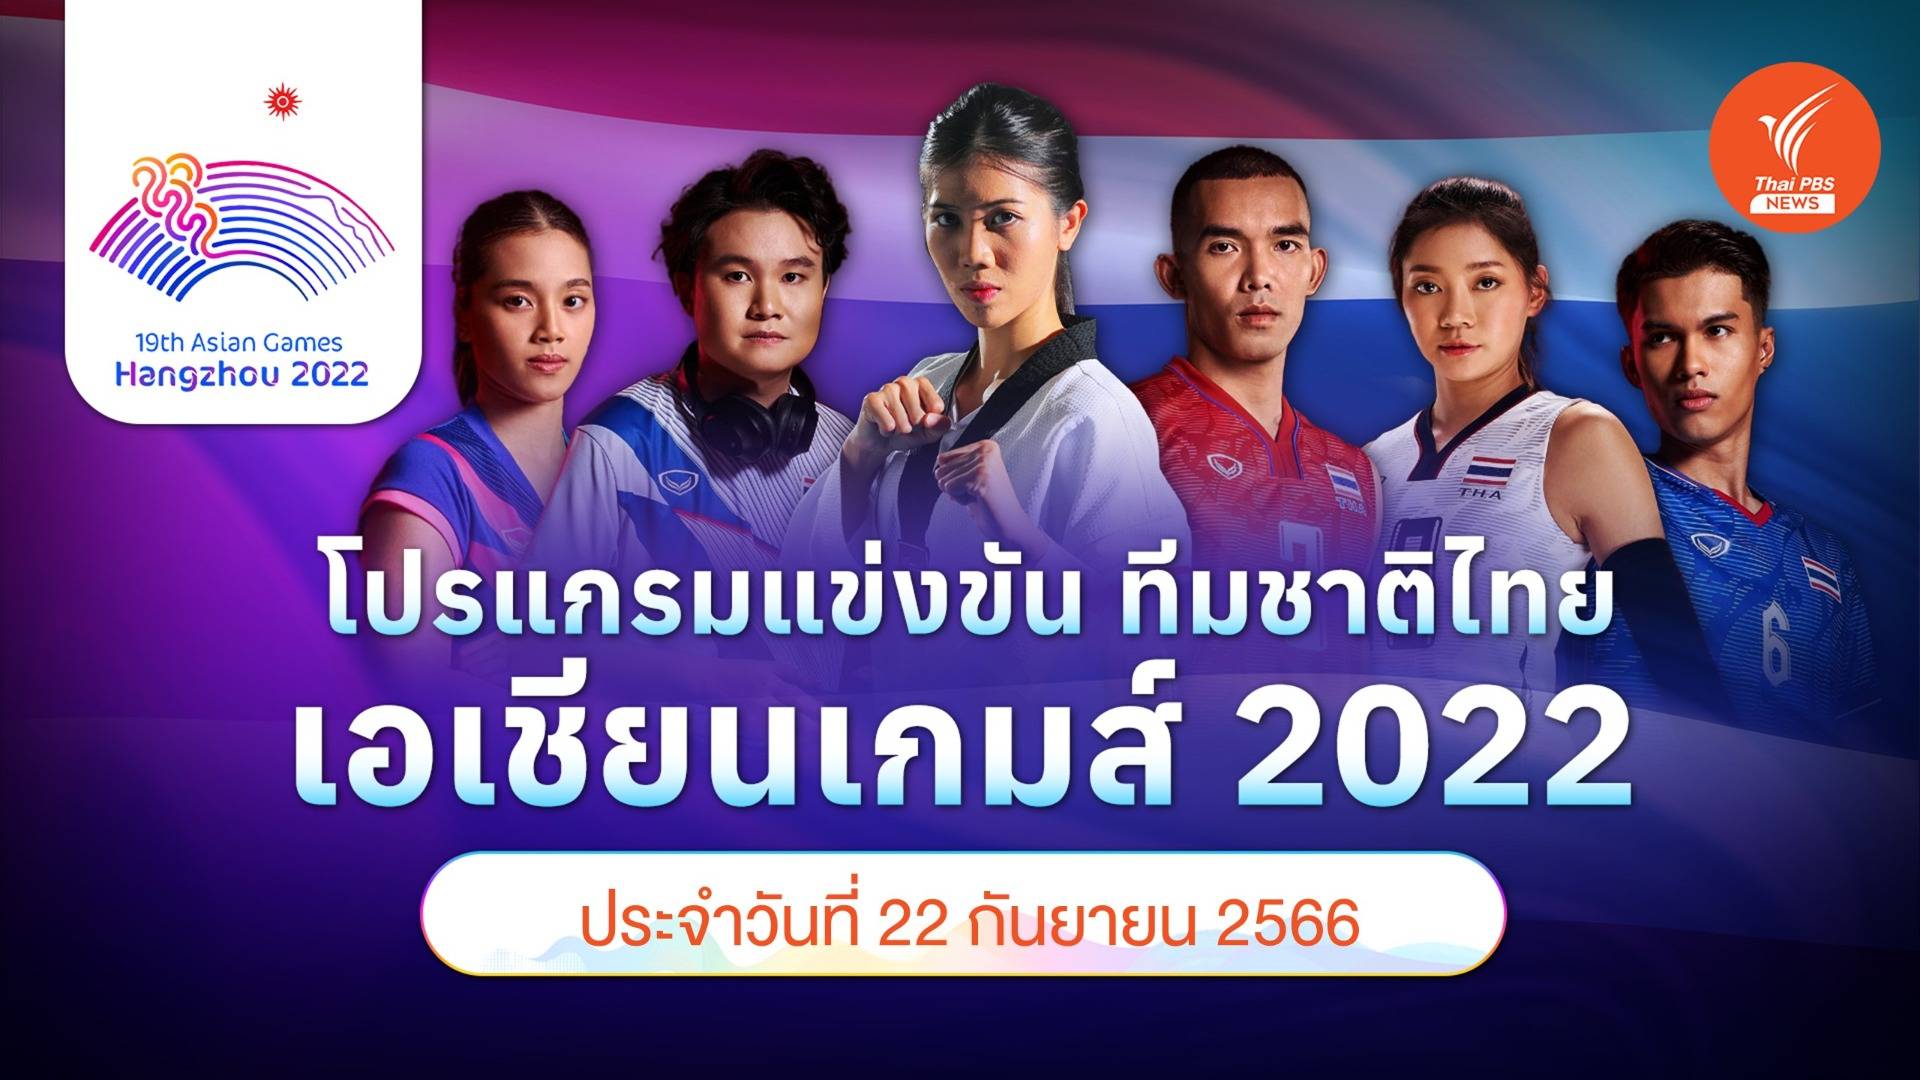 โปรแกรมการแข่งขัน เอเชียนเกมส์ 2022 ทัพนักกีฬาไทย วันที่ 22 ก.ย.66 